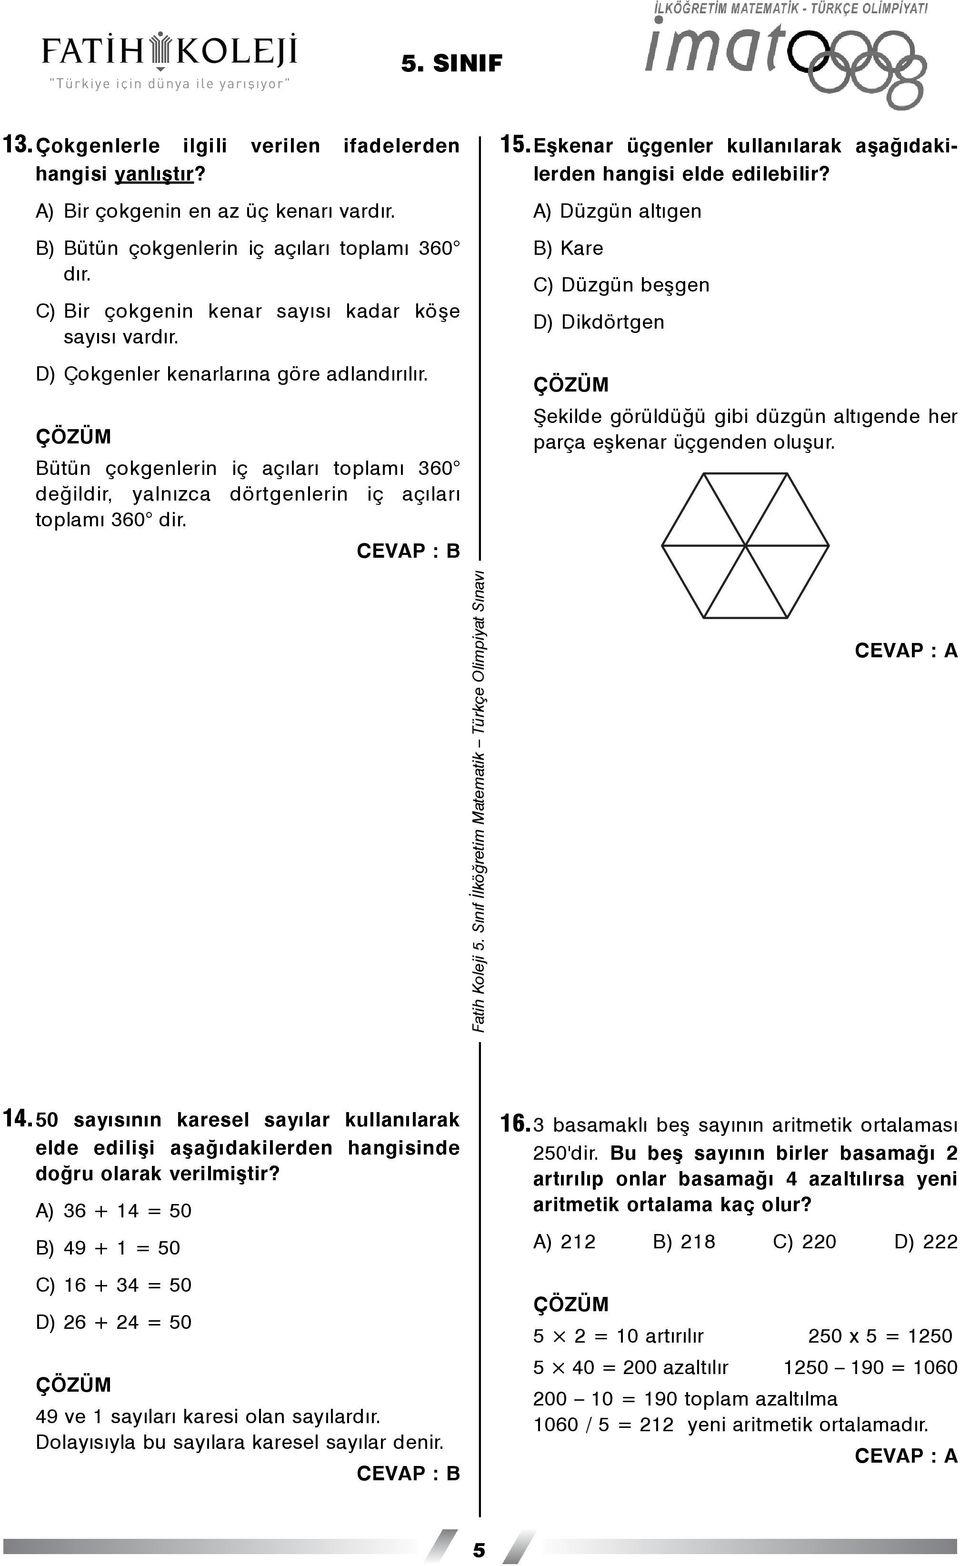 CEVAP : B 15.Eþkenar üçgenler kullanýlarak aþaðýdakilerden hangisi elde edilebilir?